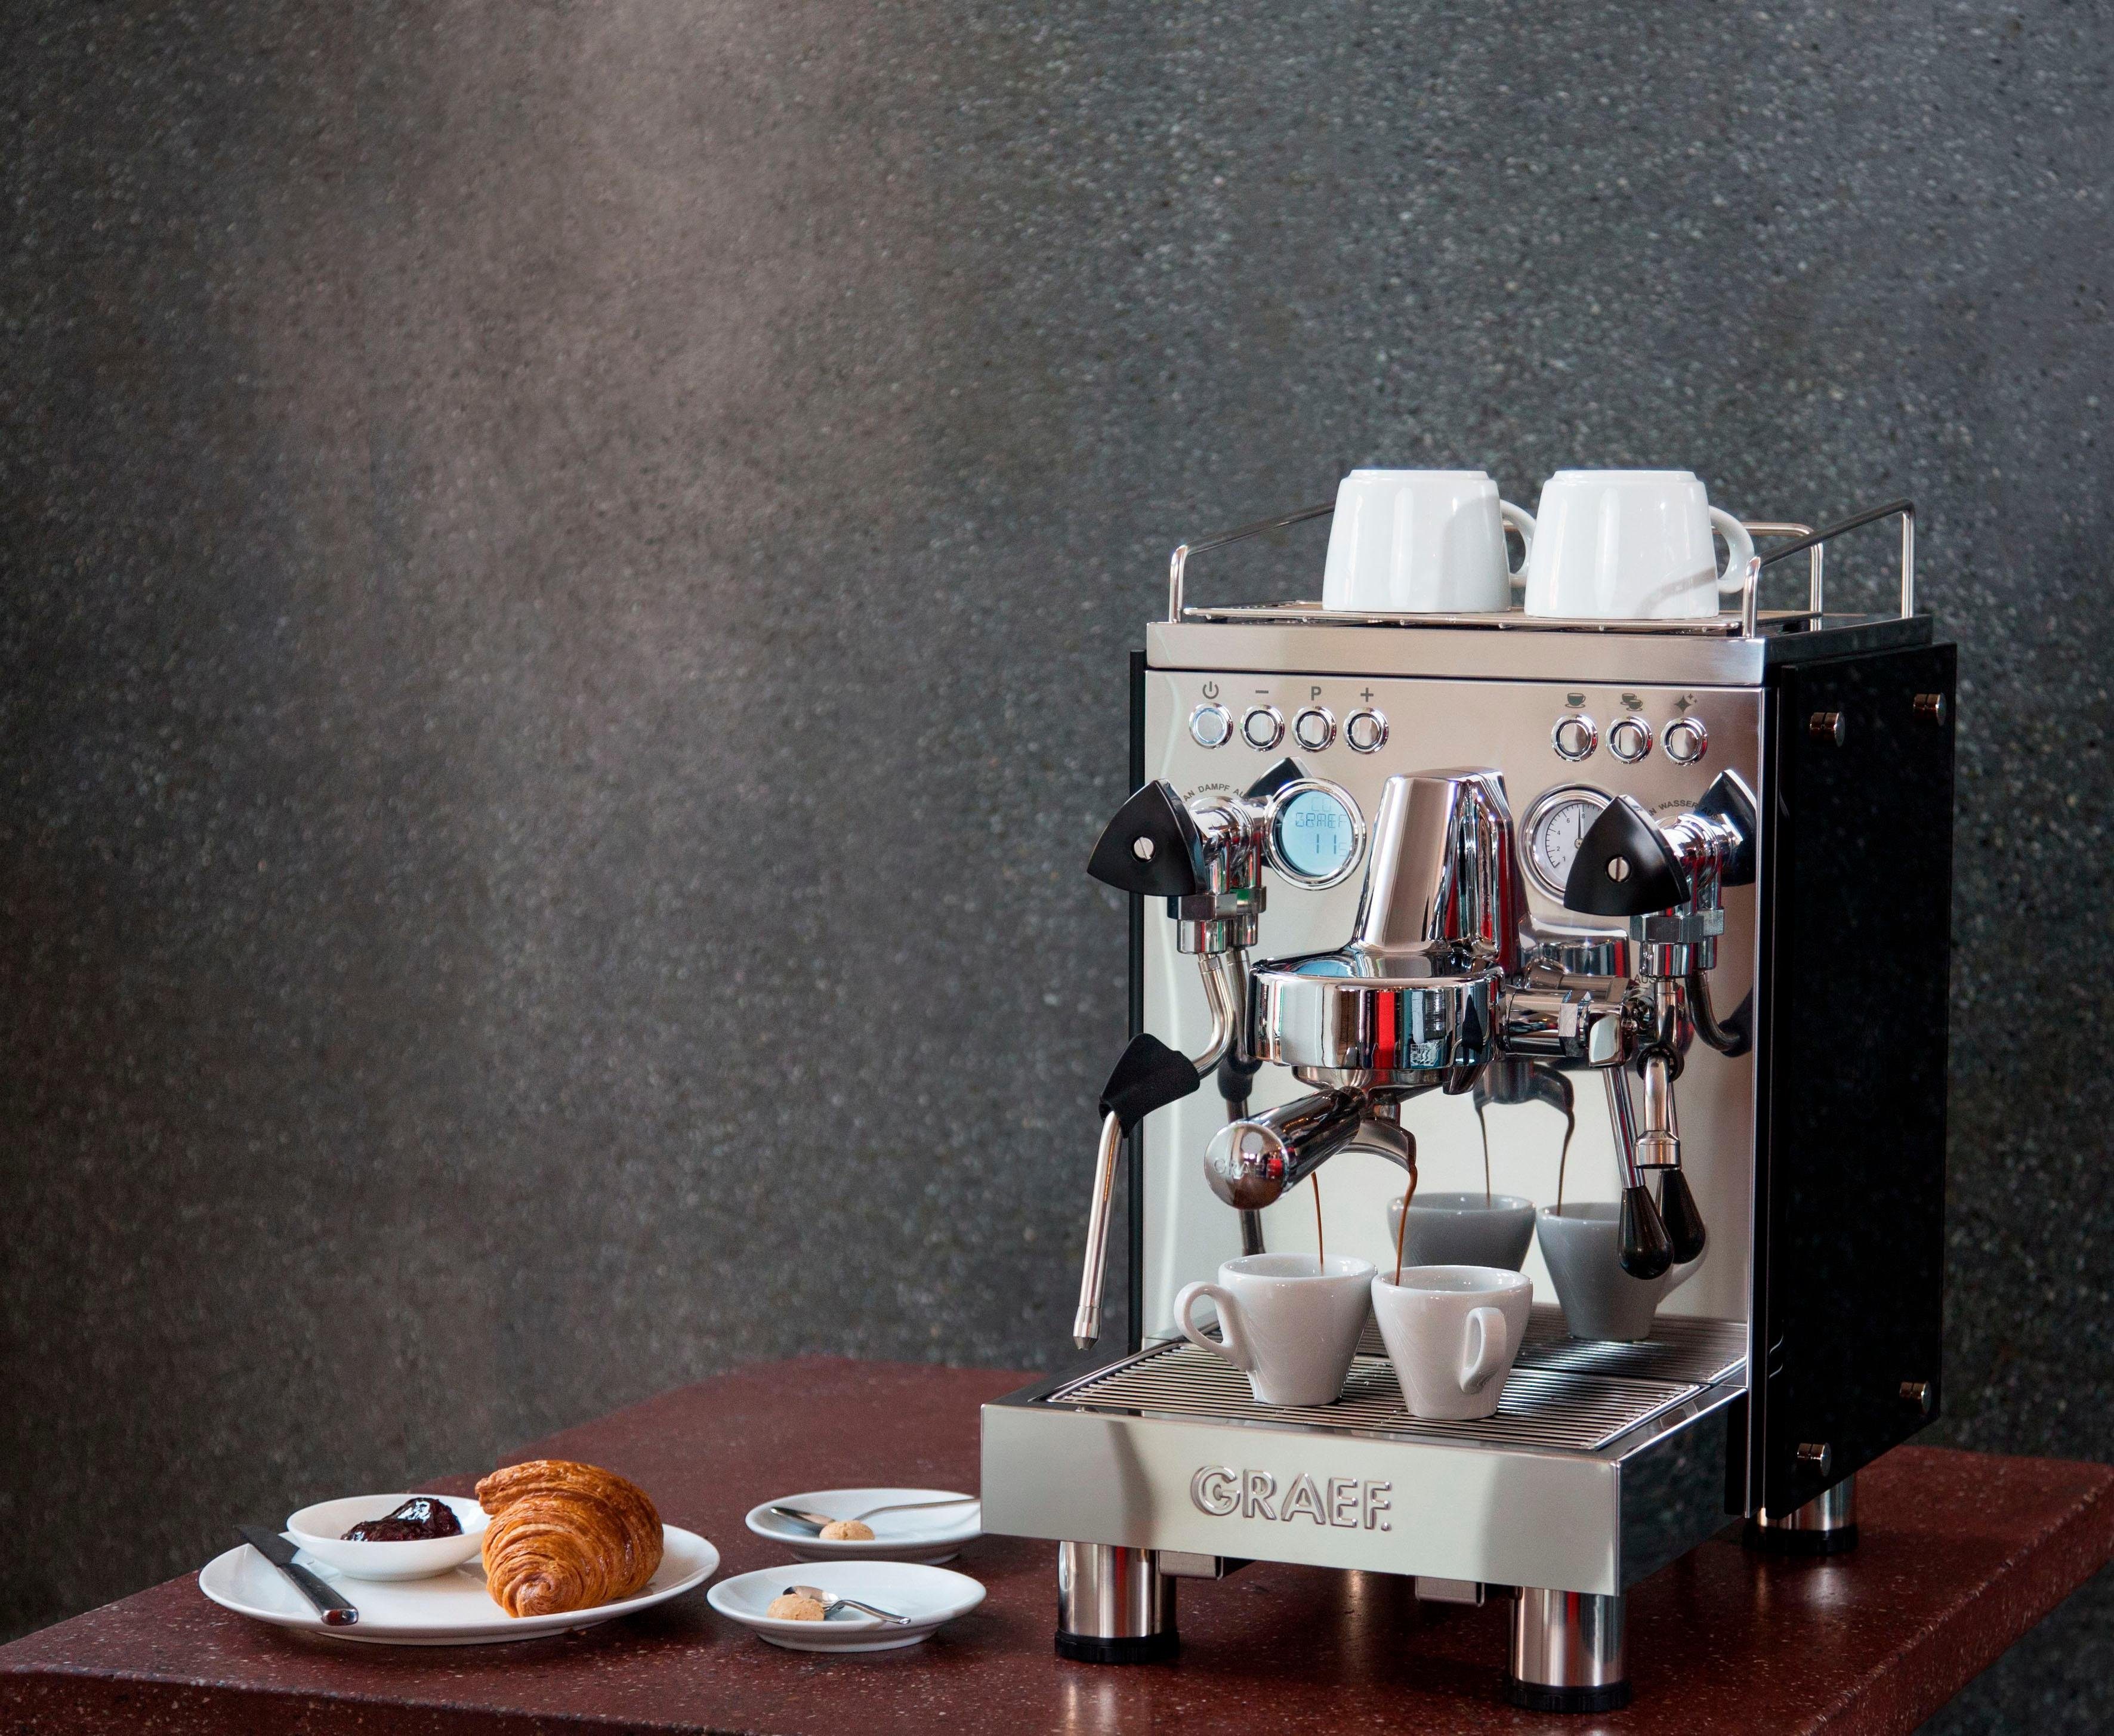 Siebträgermaschine Graef Espressomaschine "contessa"